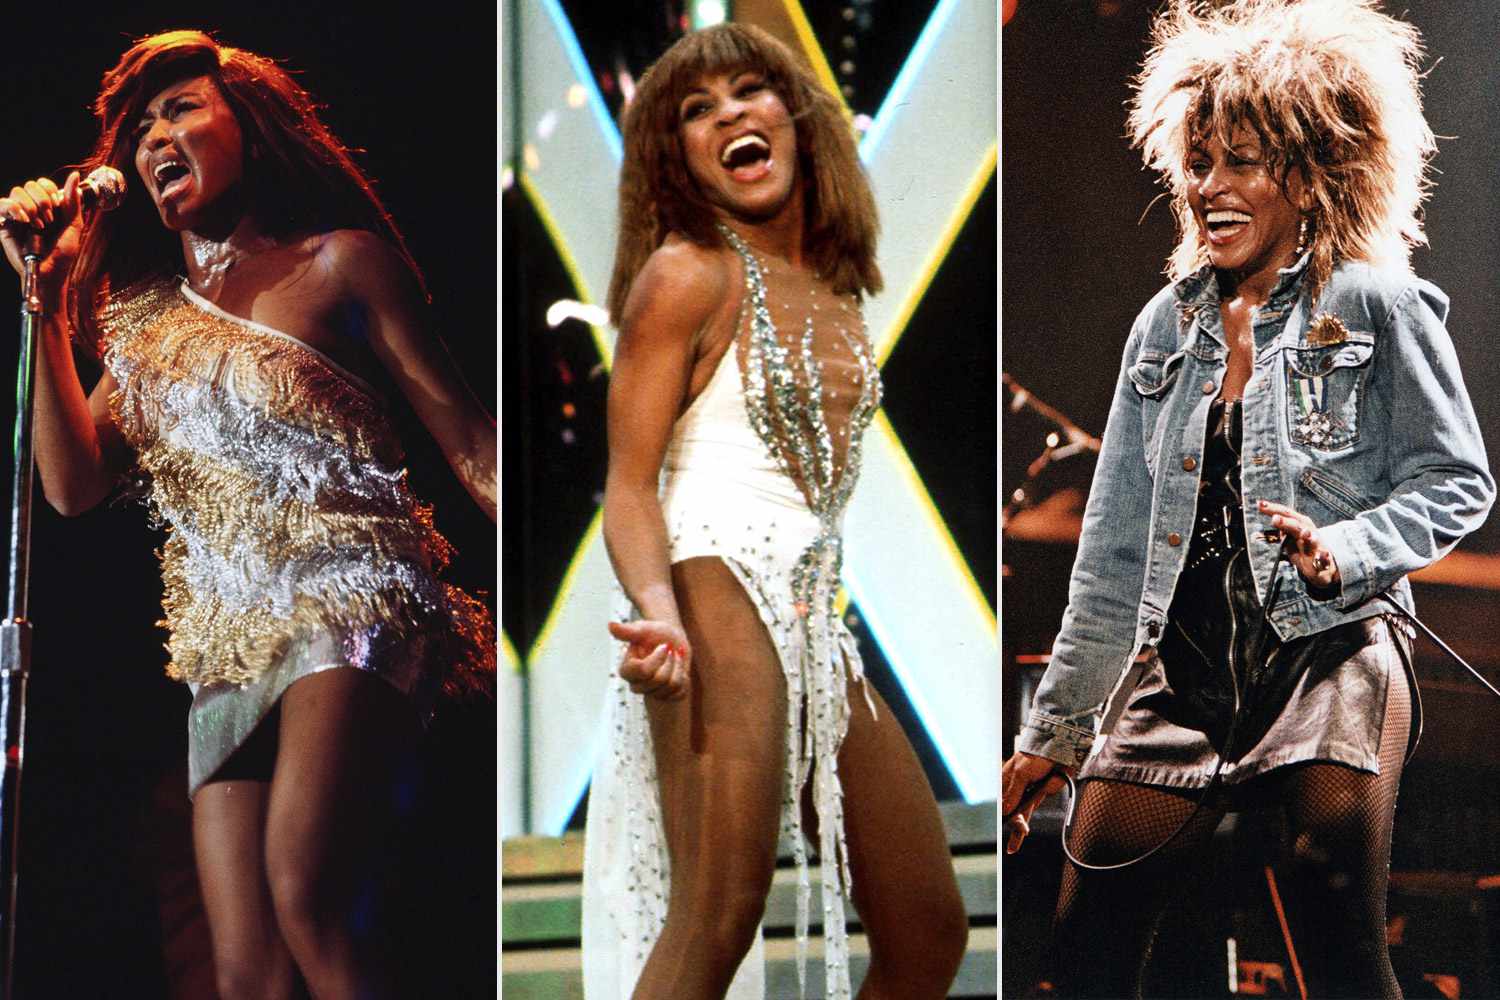 Biden, Obama mourn demise of music legend Tina Turner